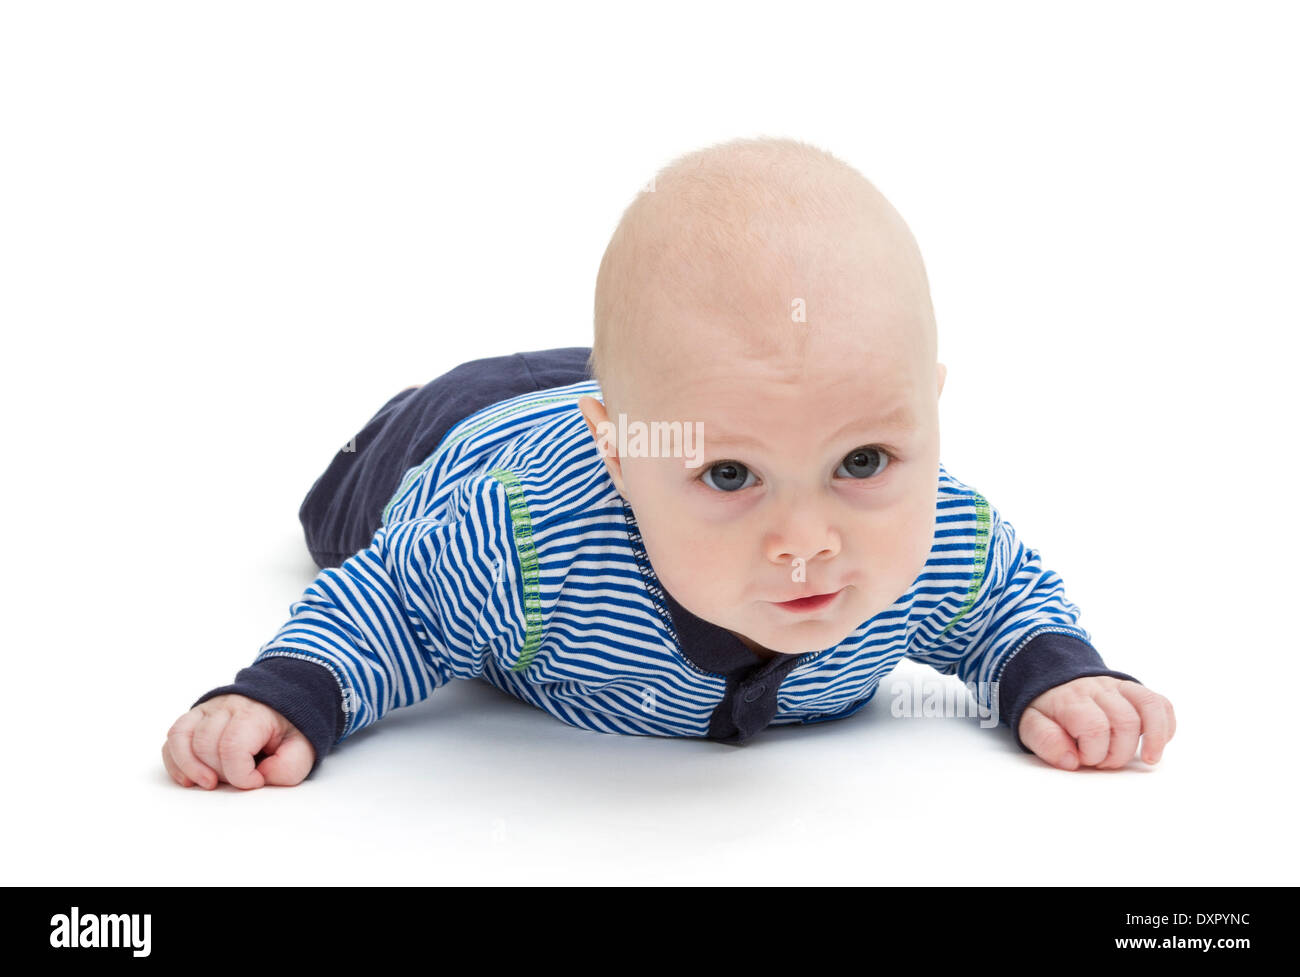 Pose sur sol bébé attentif isolé sur fond blanc Banque D'Images